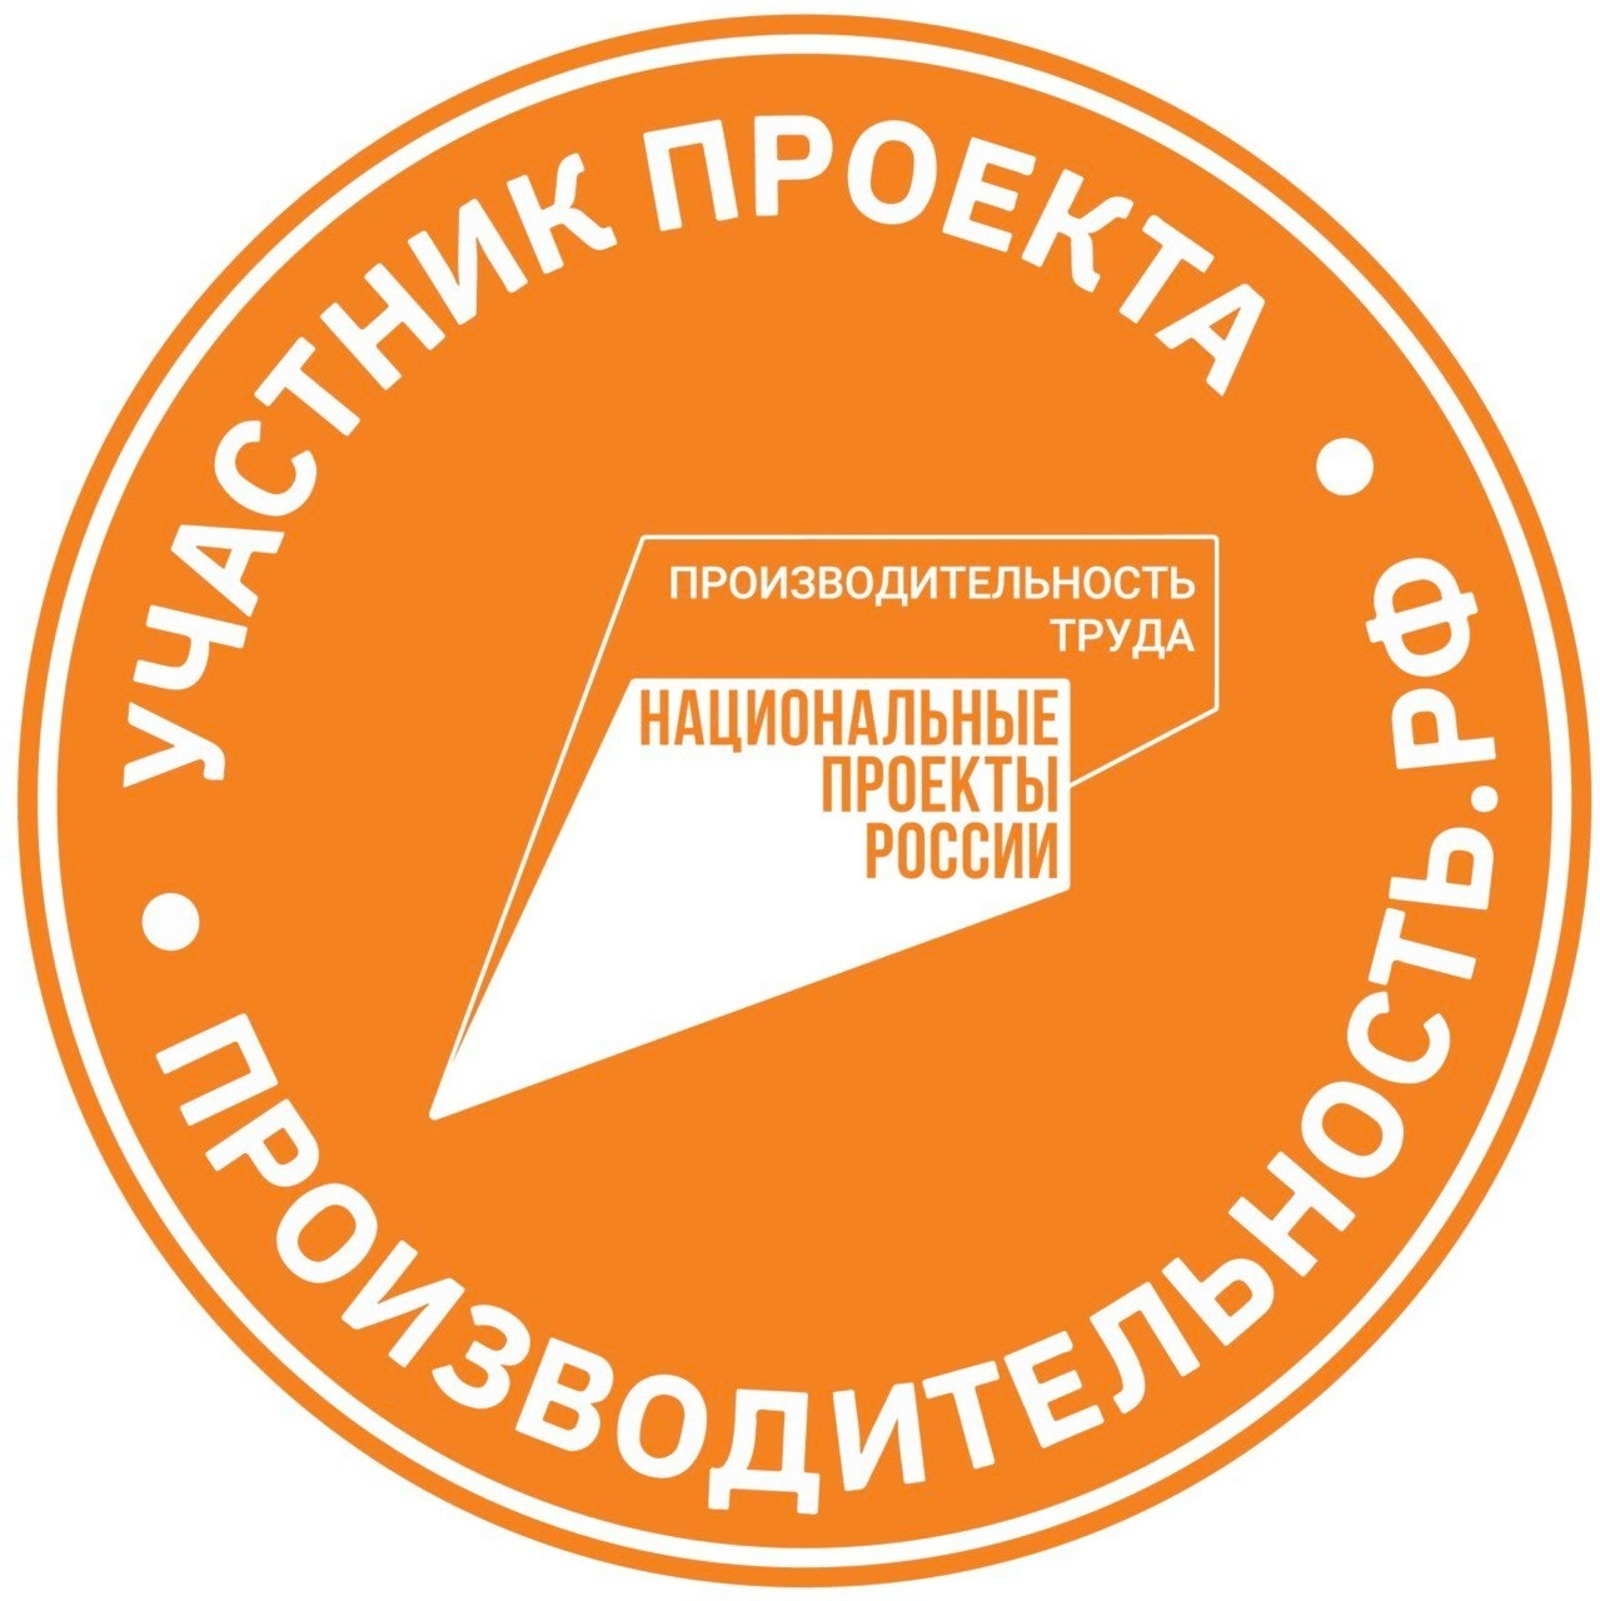 В Башкортостане к нацпроекту «Производительность труда» присоединилось два предприятия